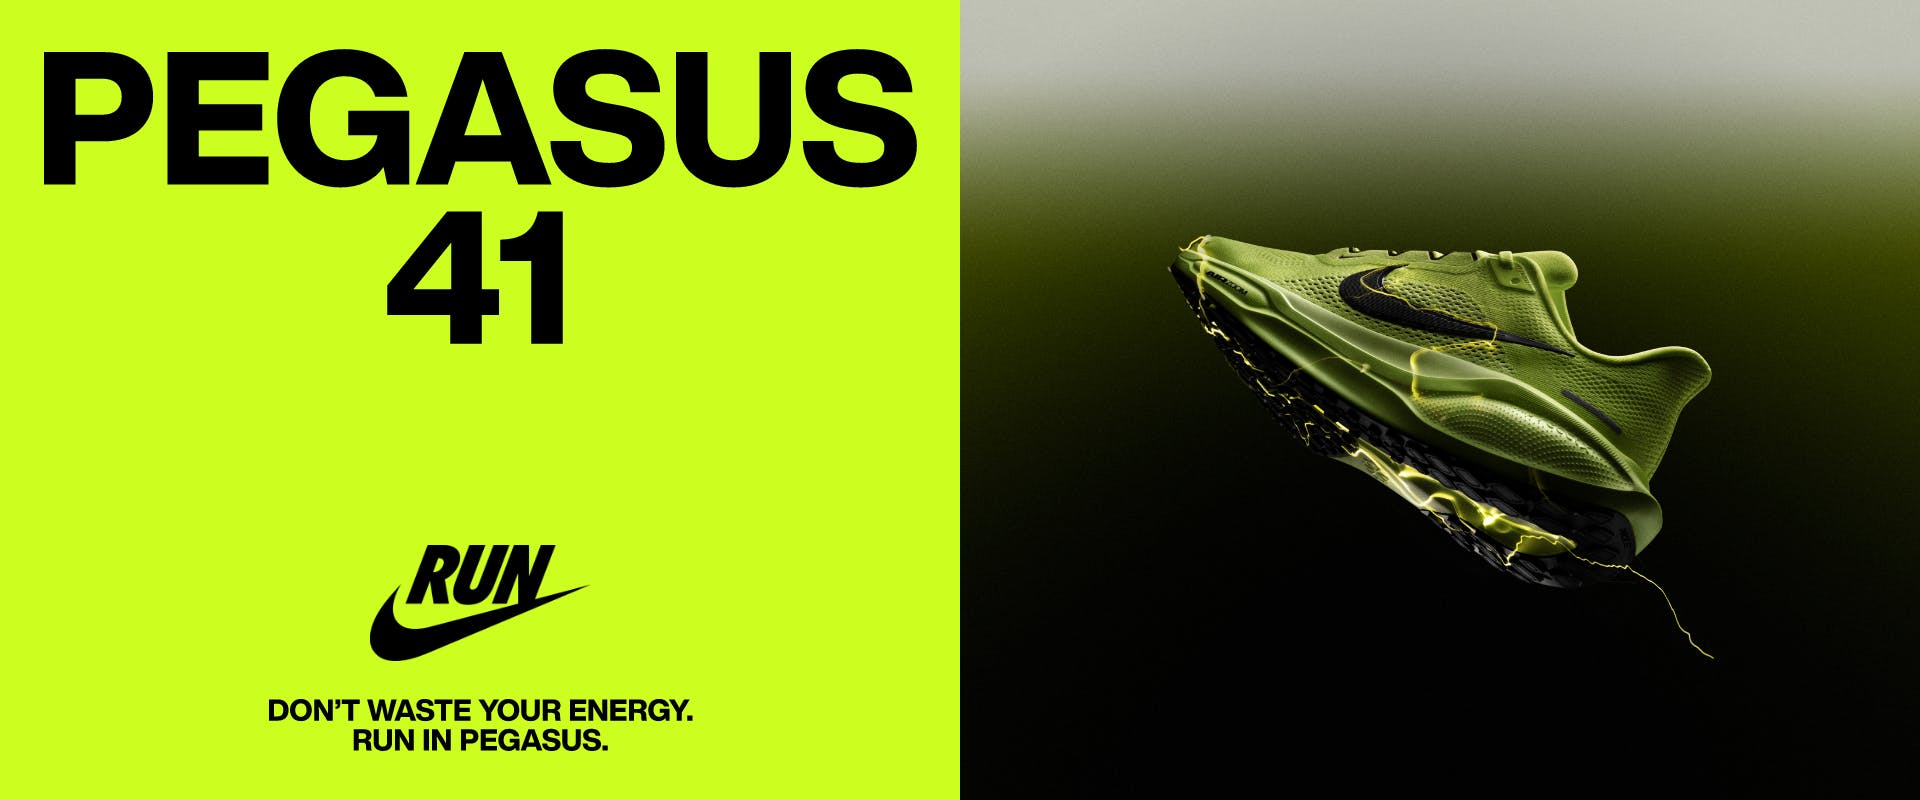 Nike Pegasus 41